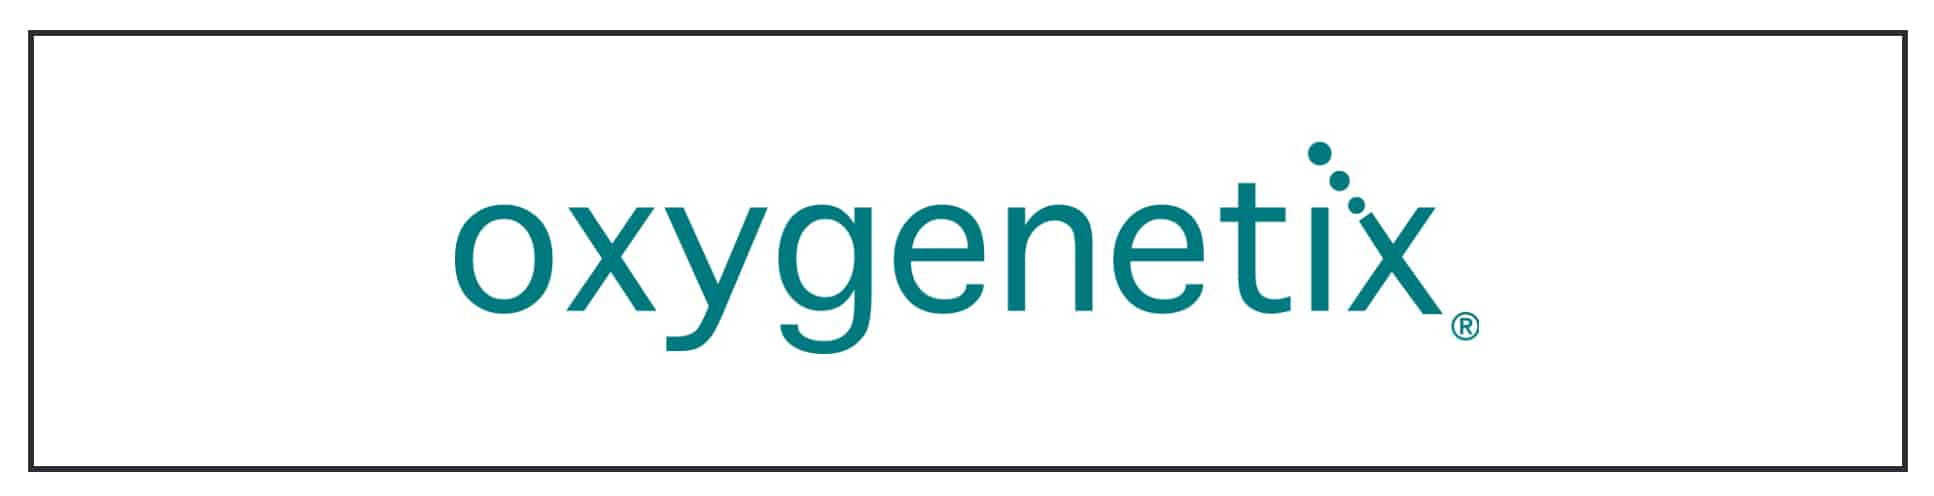 Oxygenetix logo on a white background.